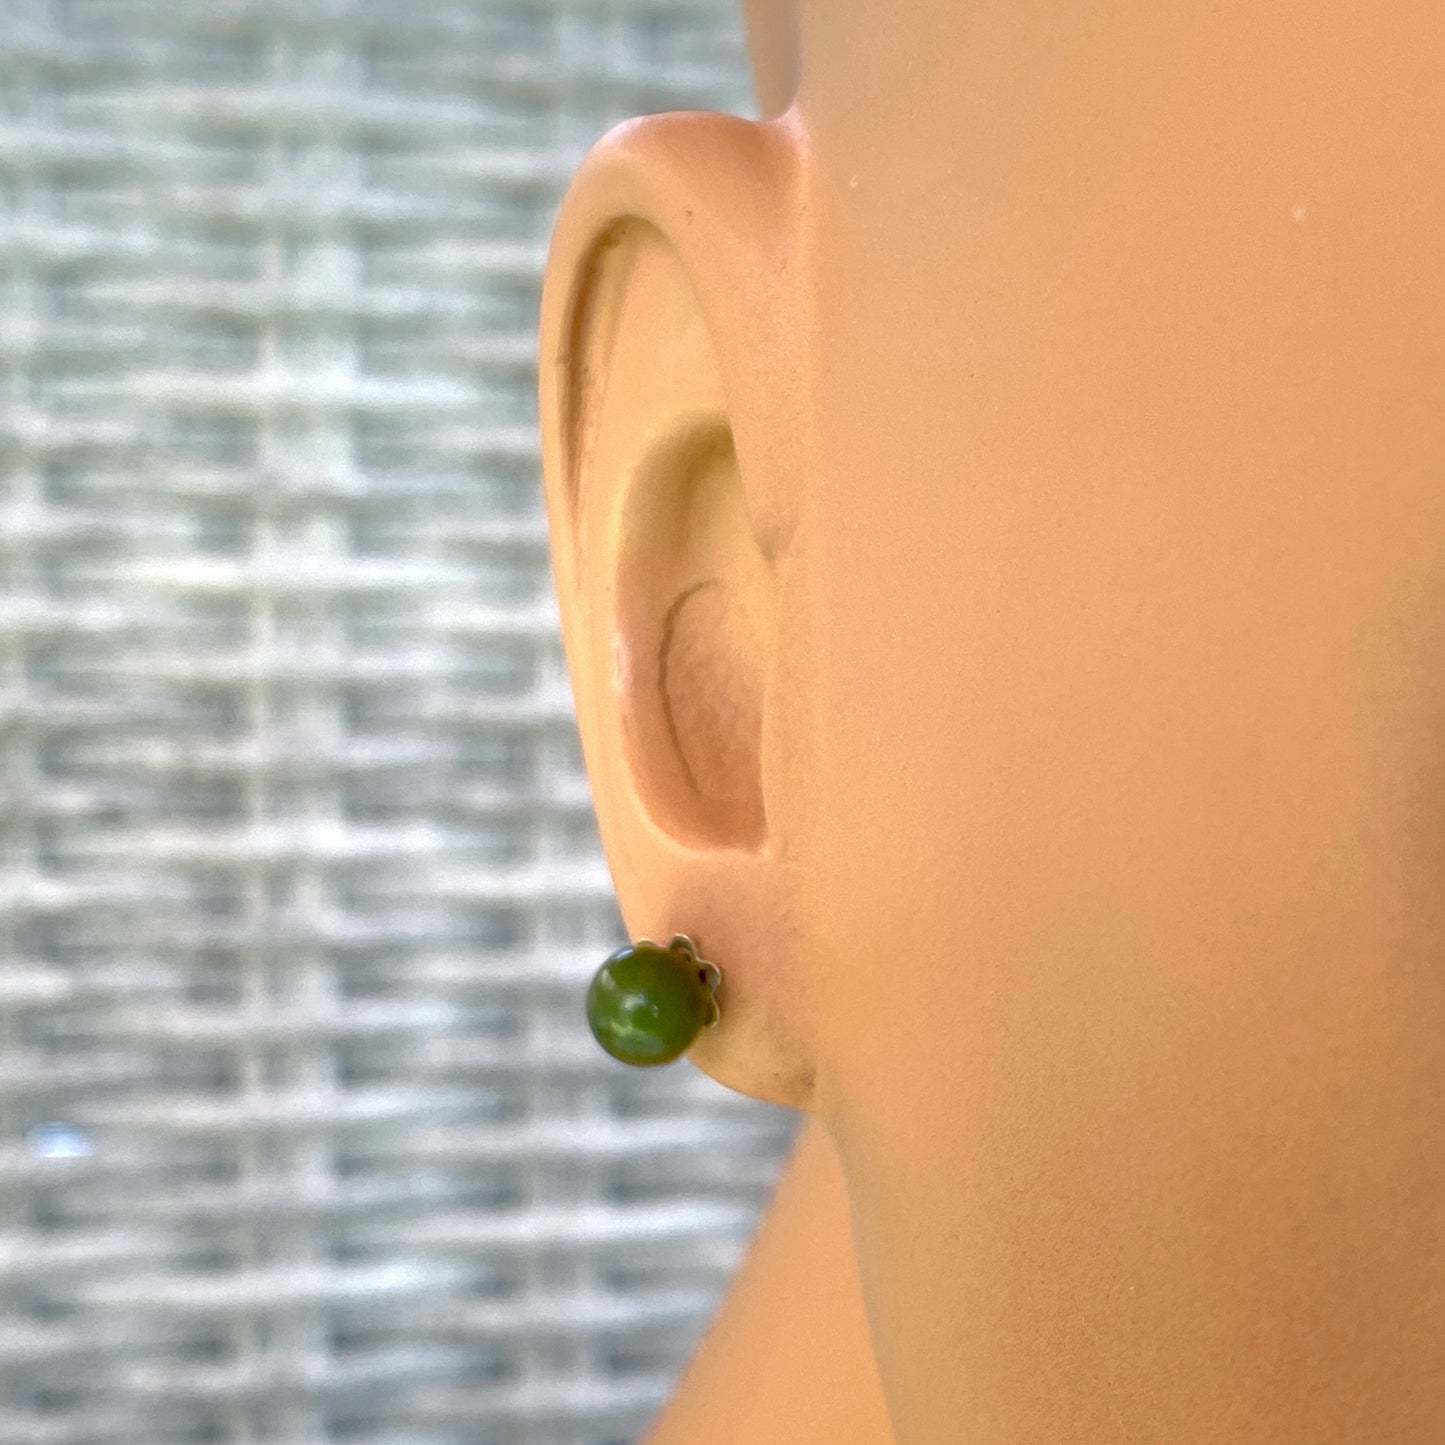 African Jade gemstone Stud Earrings